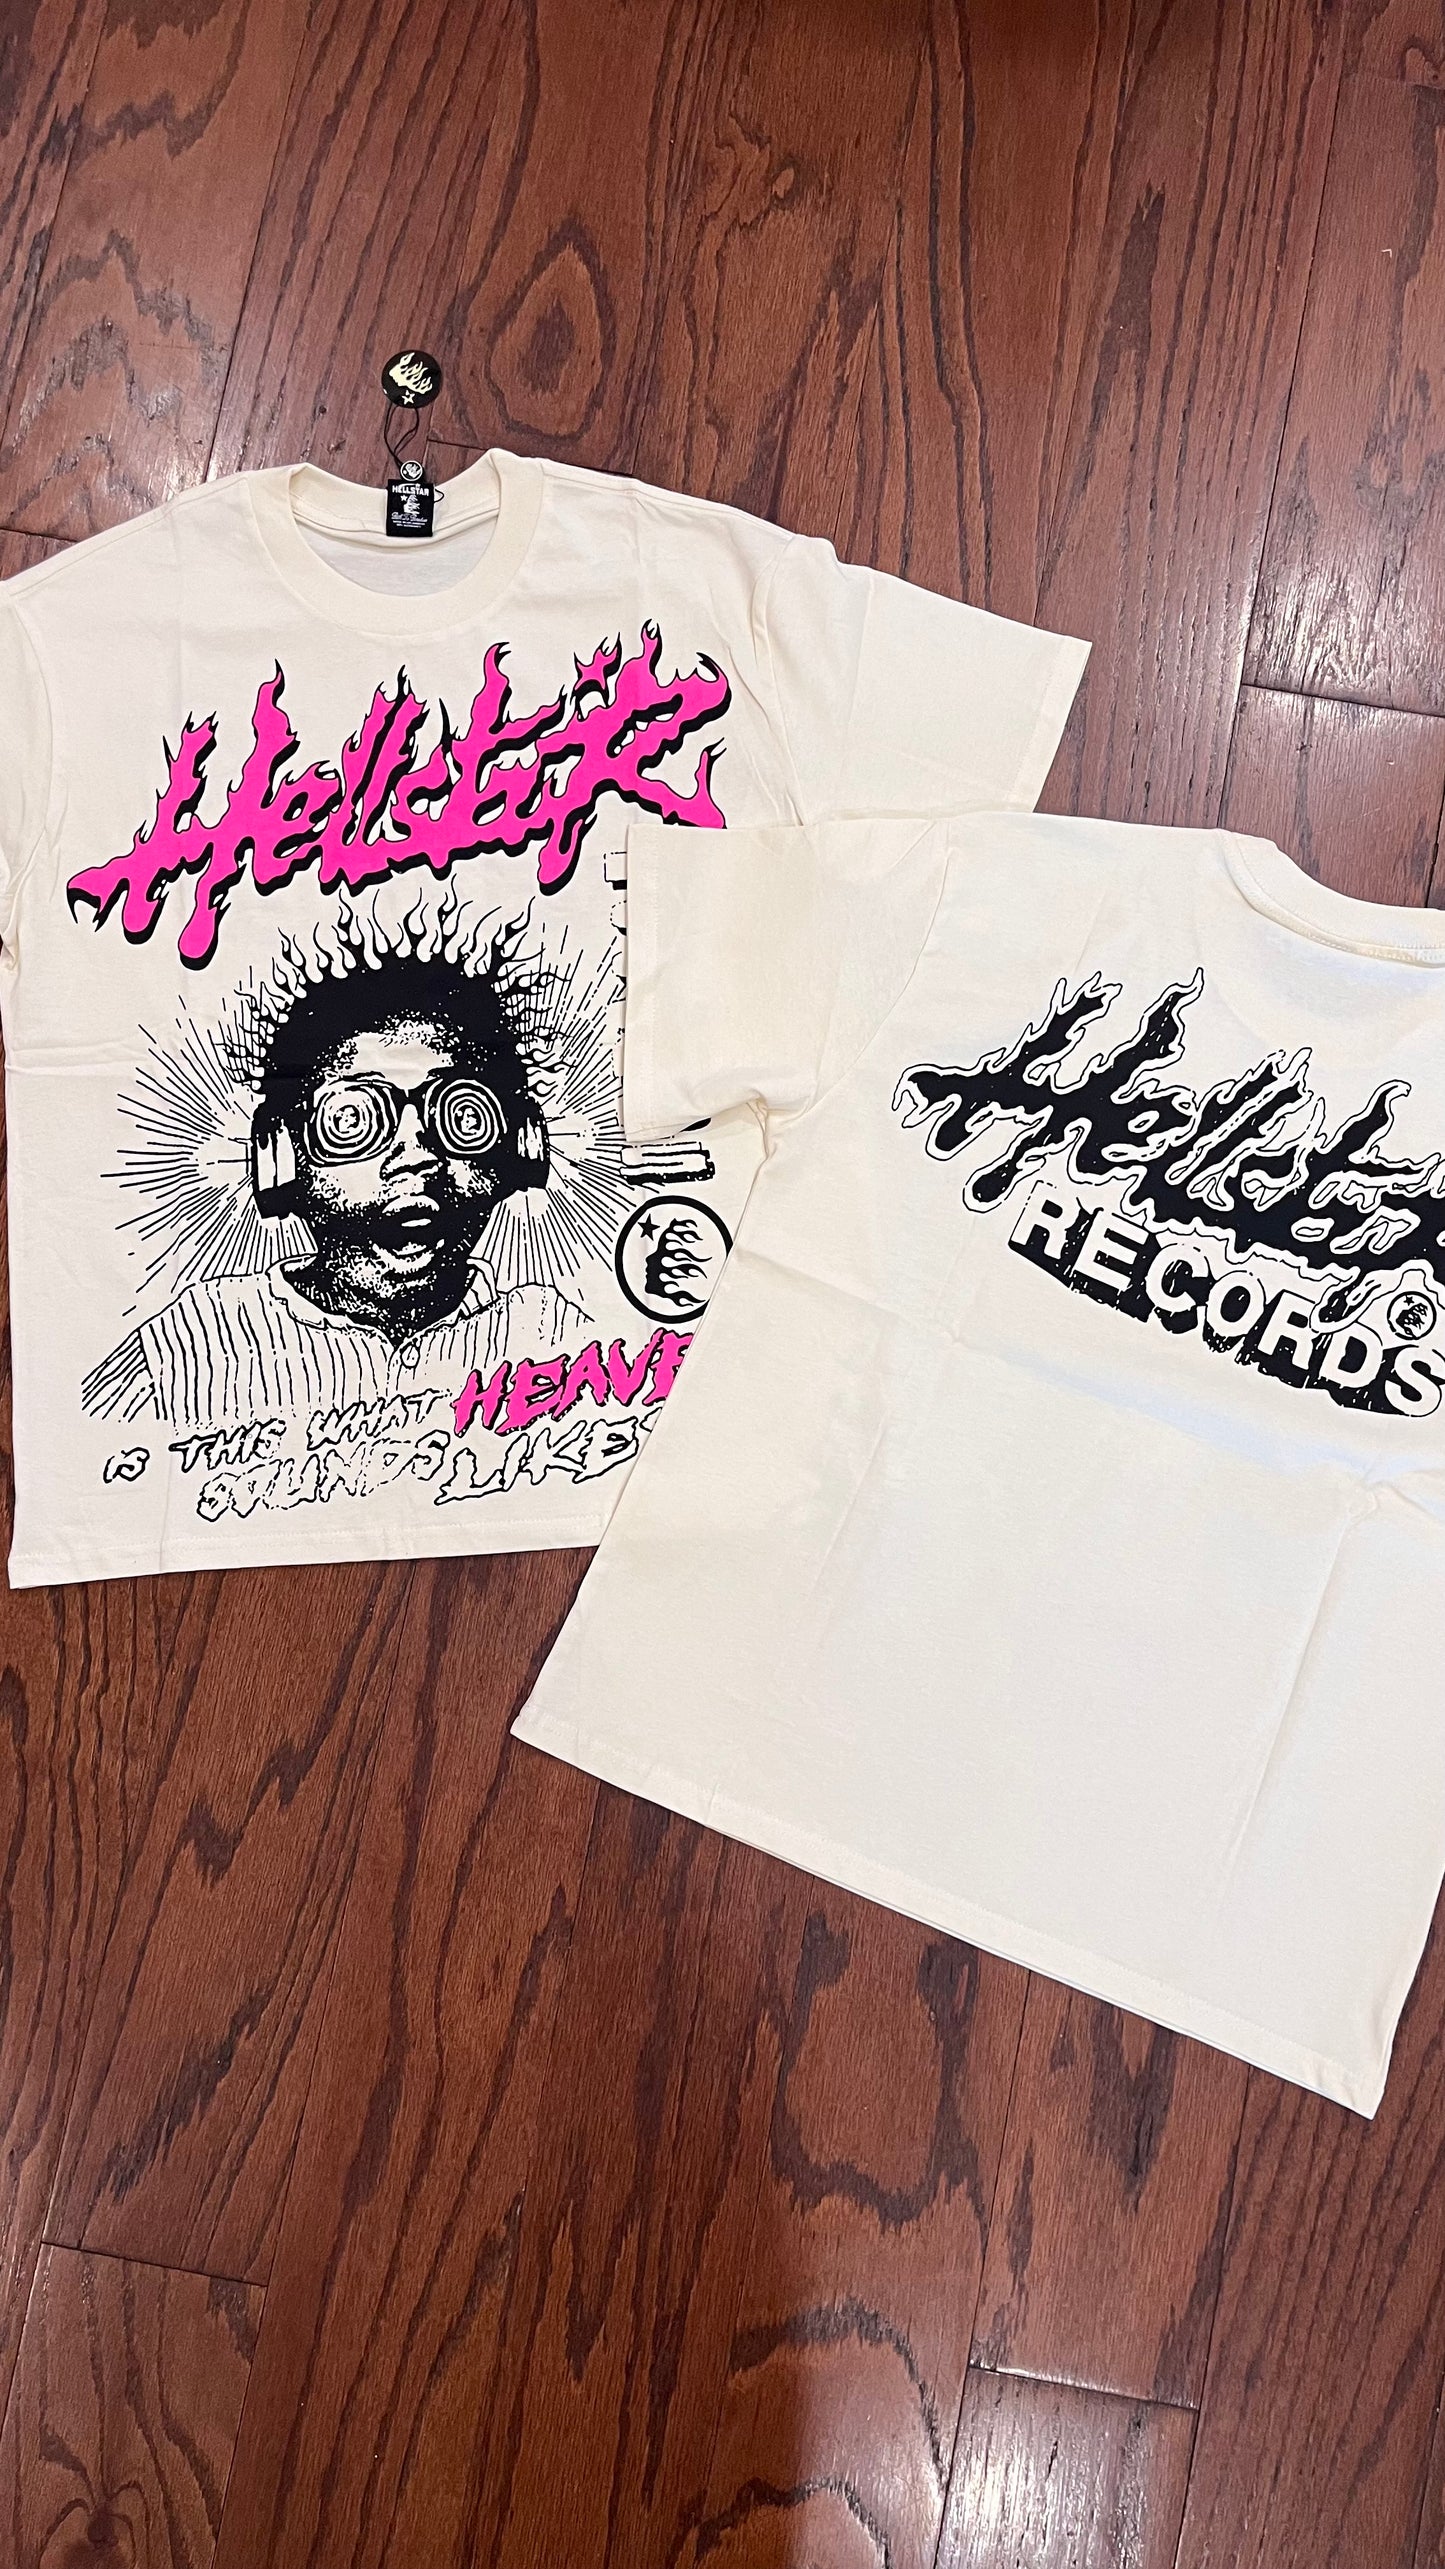 [ON HAND] Hellstar Records #2